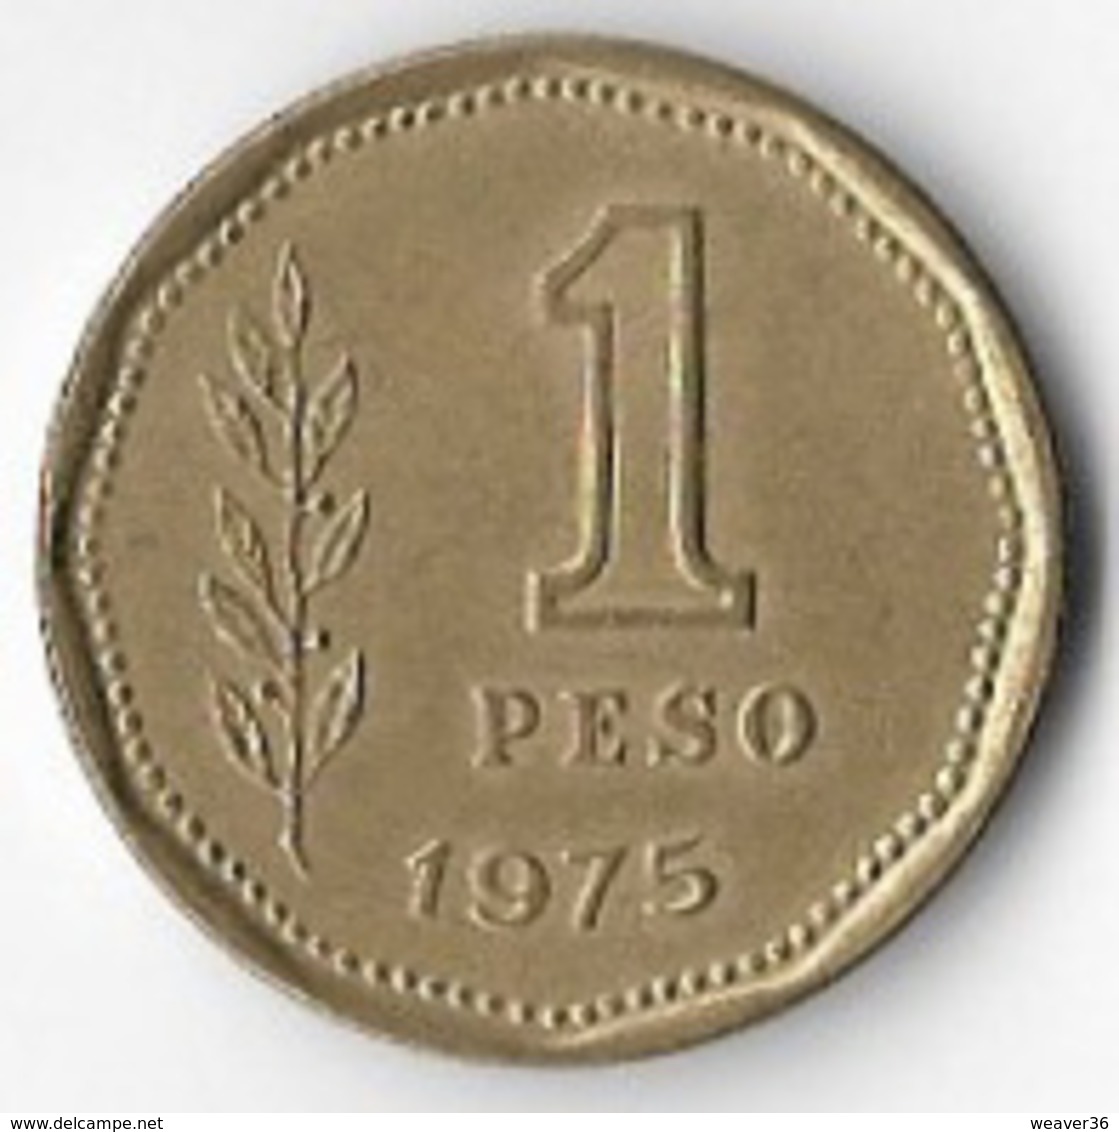 Argentina 1975 1 Peso [C167/1D] - Argentina